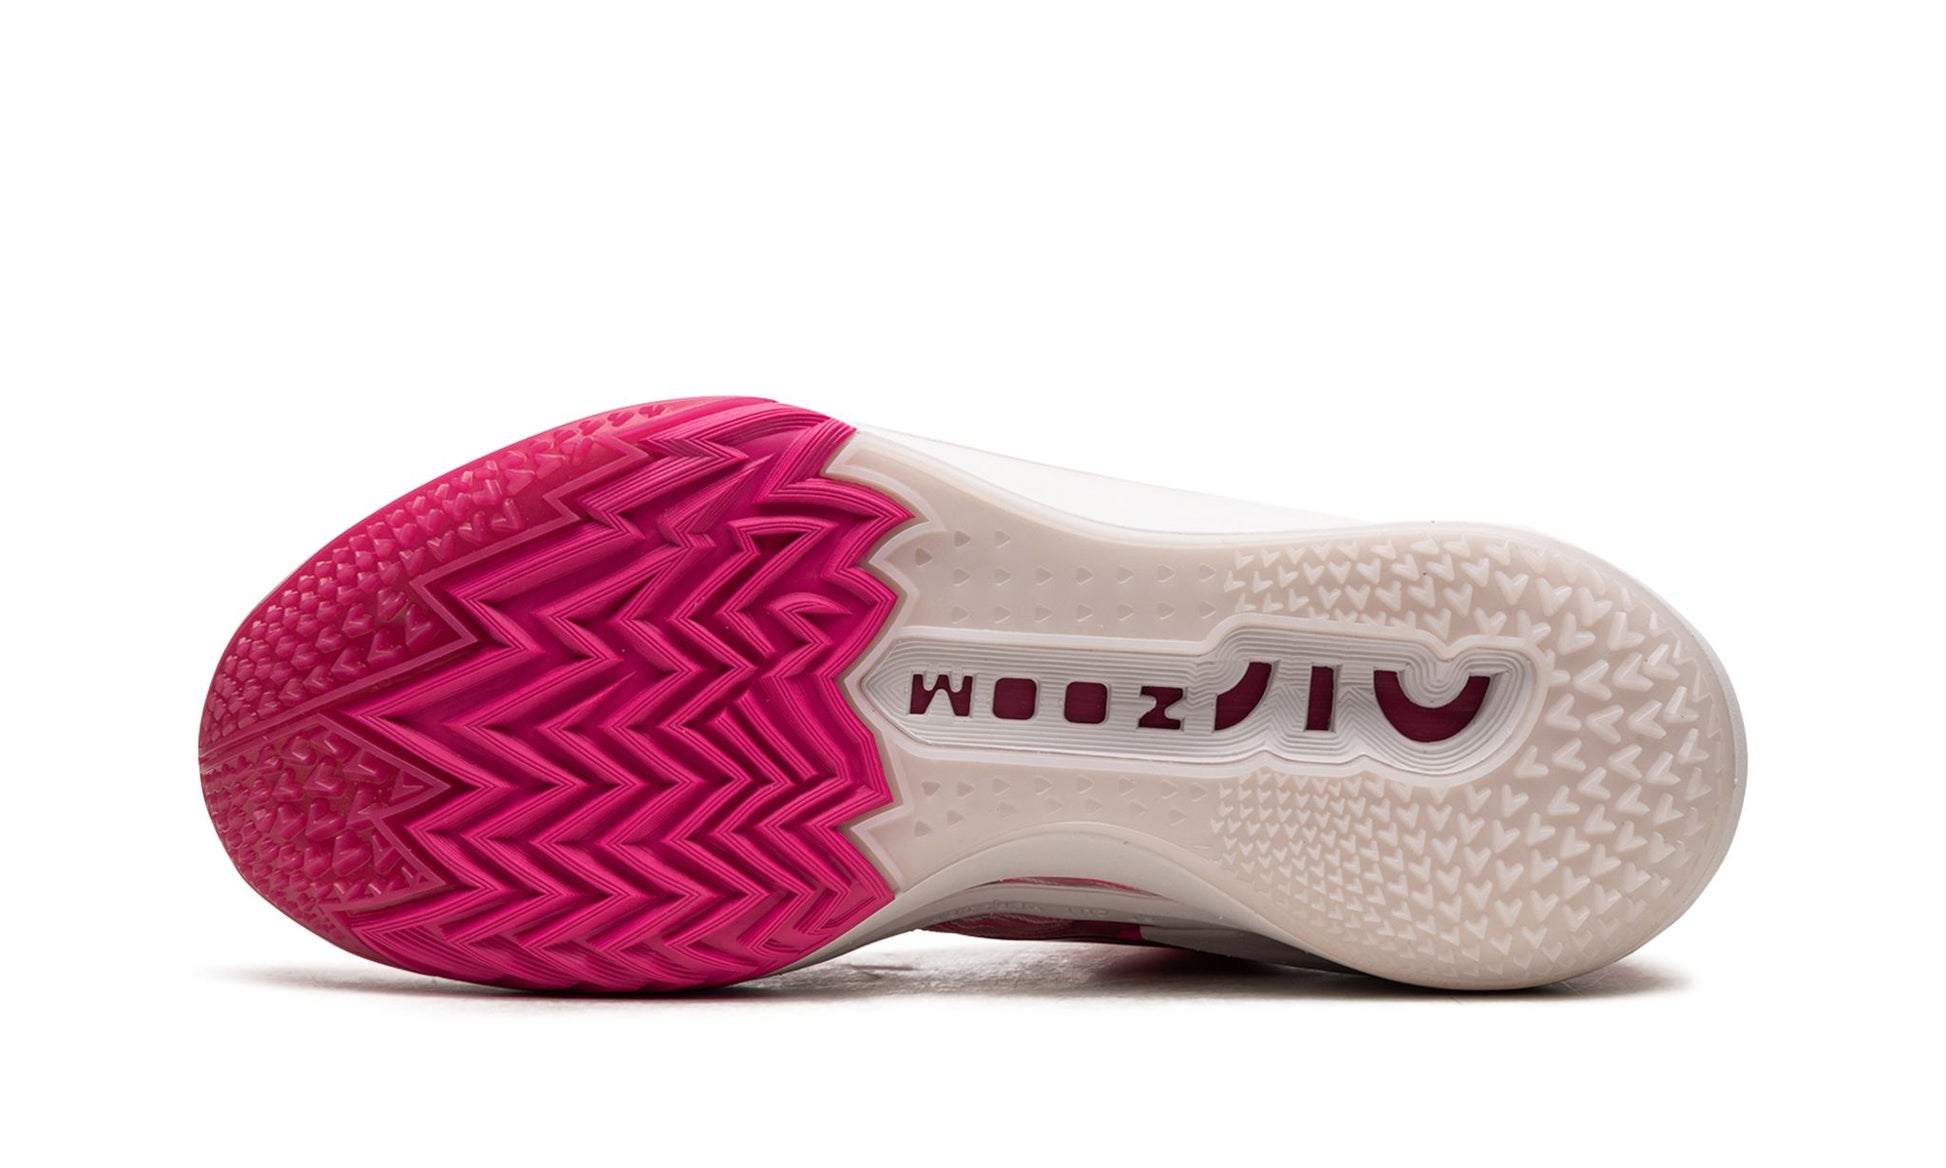 Nike Zoom GT Cut 2 Hyper Pink